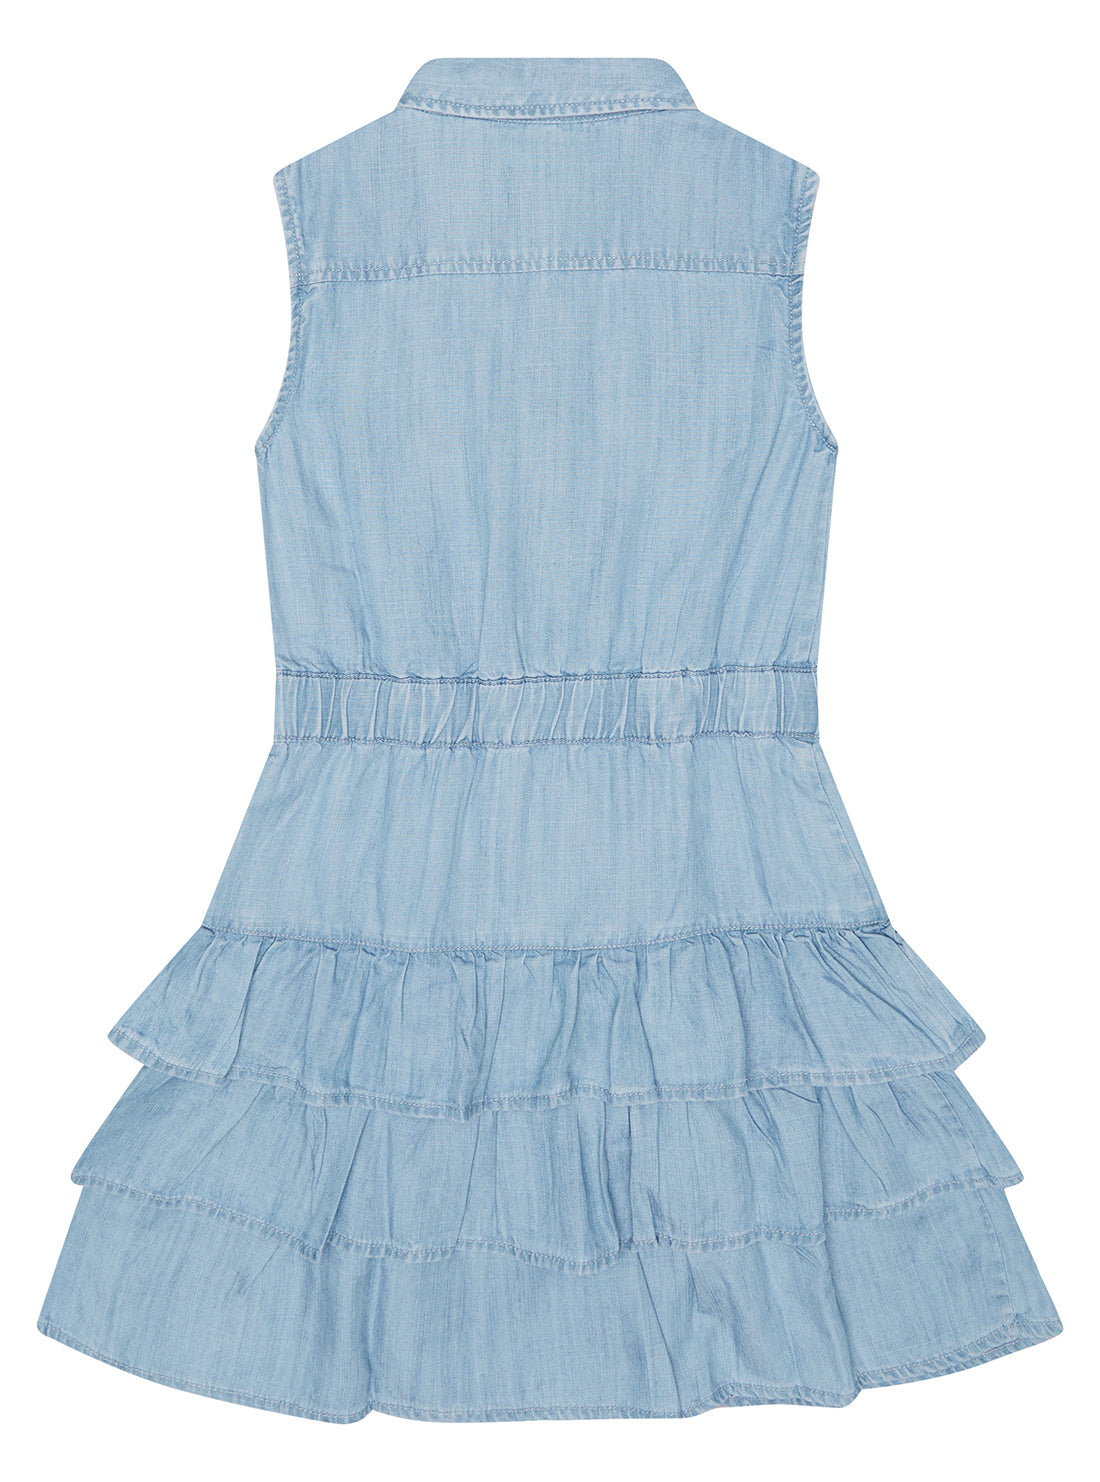 GUESS Little Girl Light Blue Wash Denim Dress (2-7) K3RK18D3X30 Back View